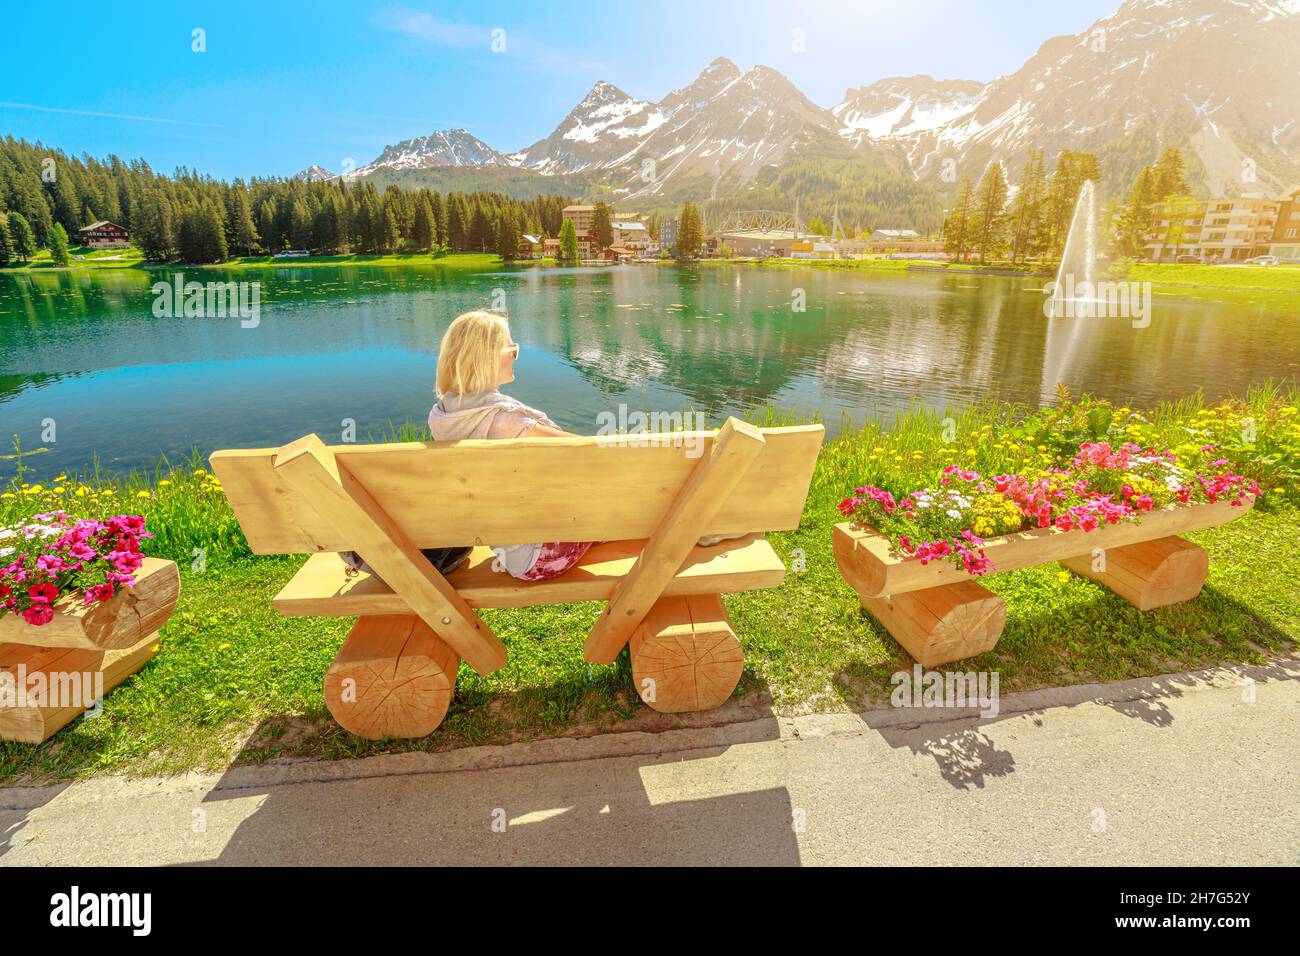 Arosa Waterfront à l'aube.Une jeune fille touristique se détendant dans le parc de la ville d'Arosa et station touristique près du lac Obersee en Suisse.Téléphérique d'Arosa vers Banque D'Images